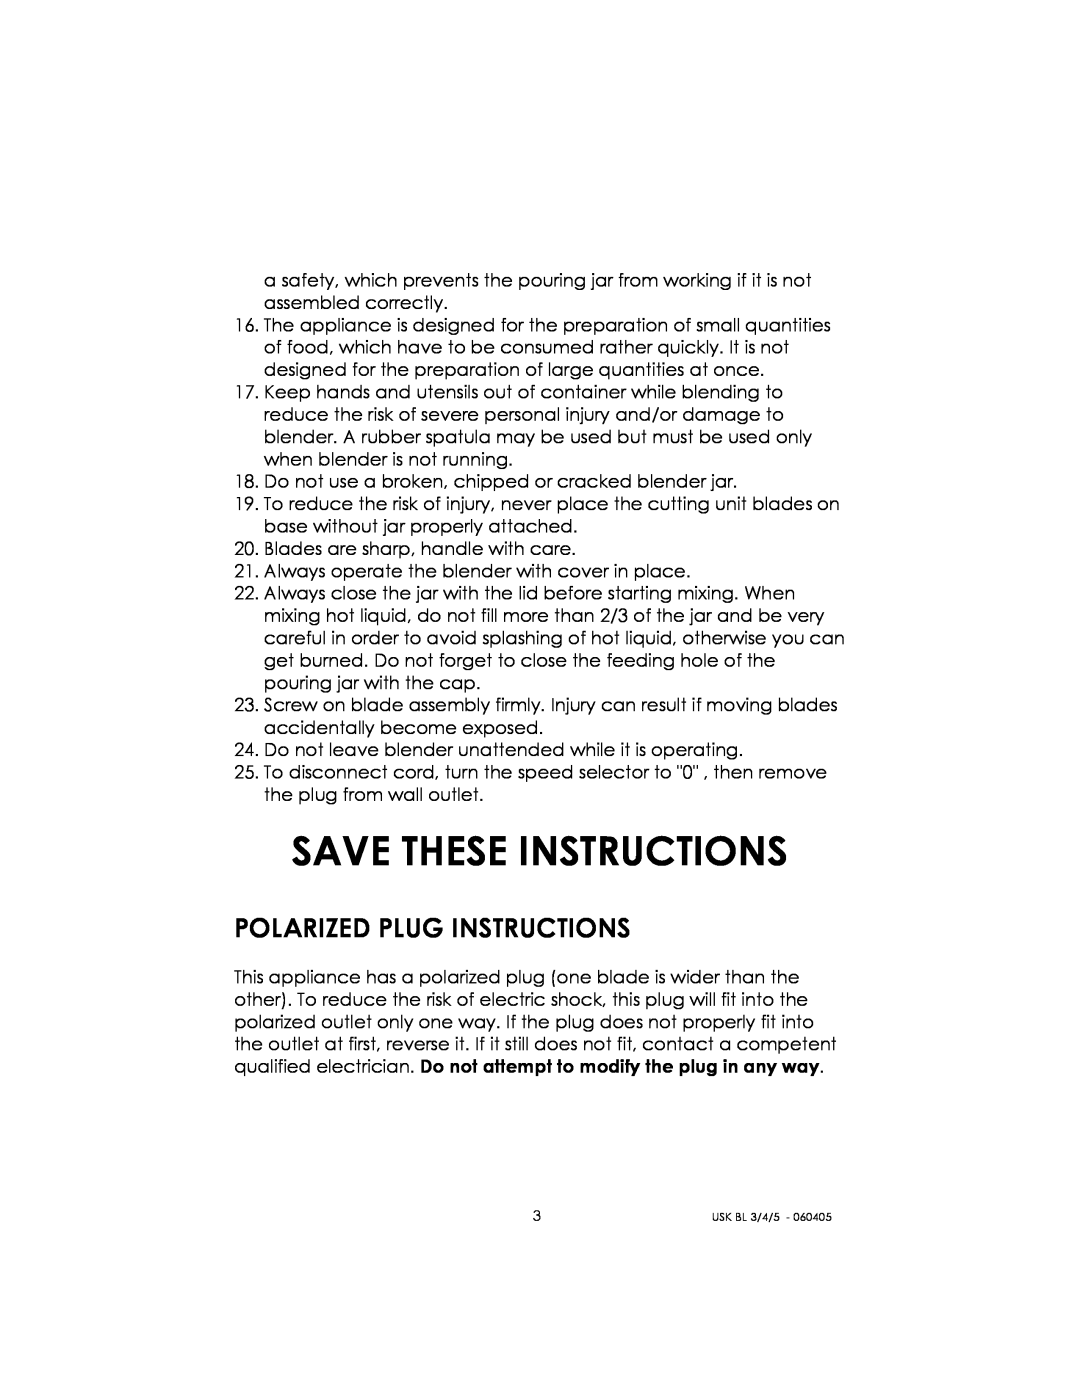 Kalorik USK BL 3/4/5 manual Save These Instructions, Polarized Plug Instructions 